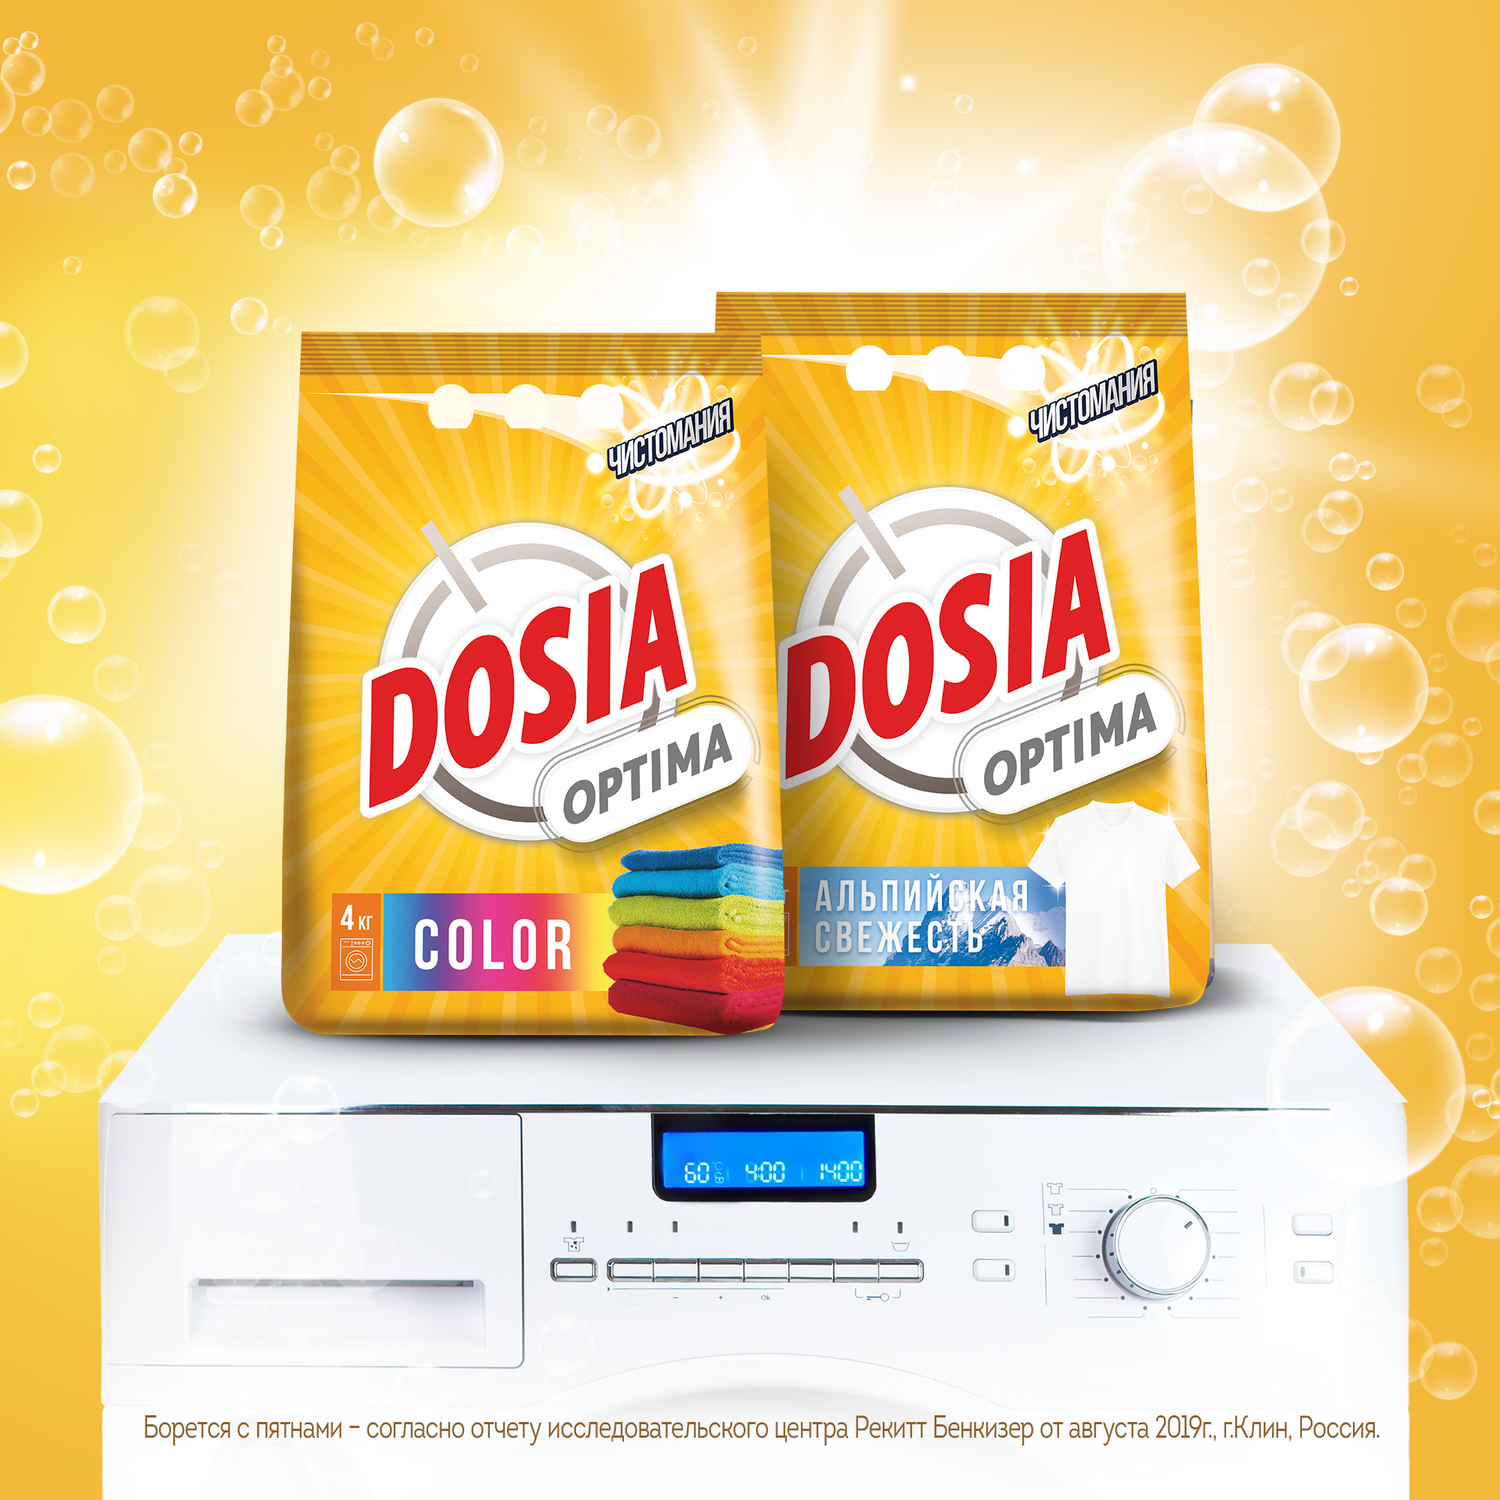 Порошок для стирки Dosia для цветных вещей OPTIMA COLOR 4кг - фото 2